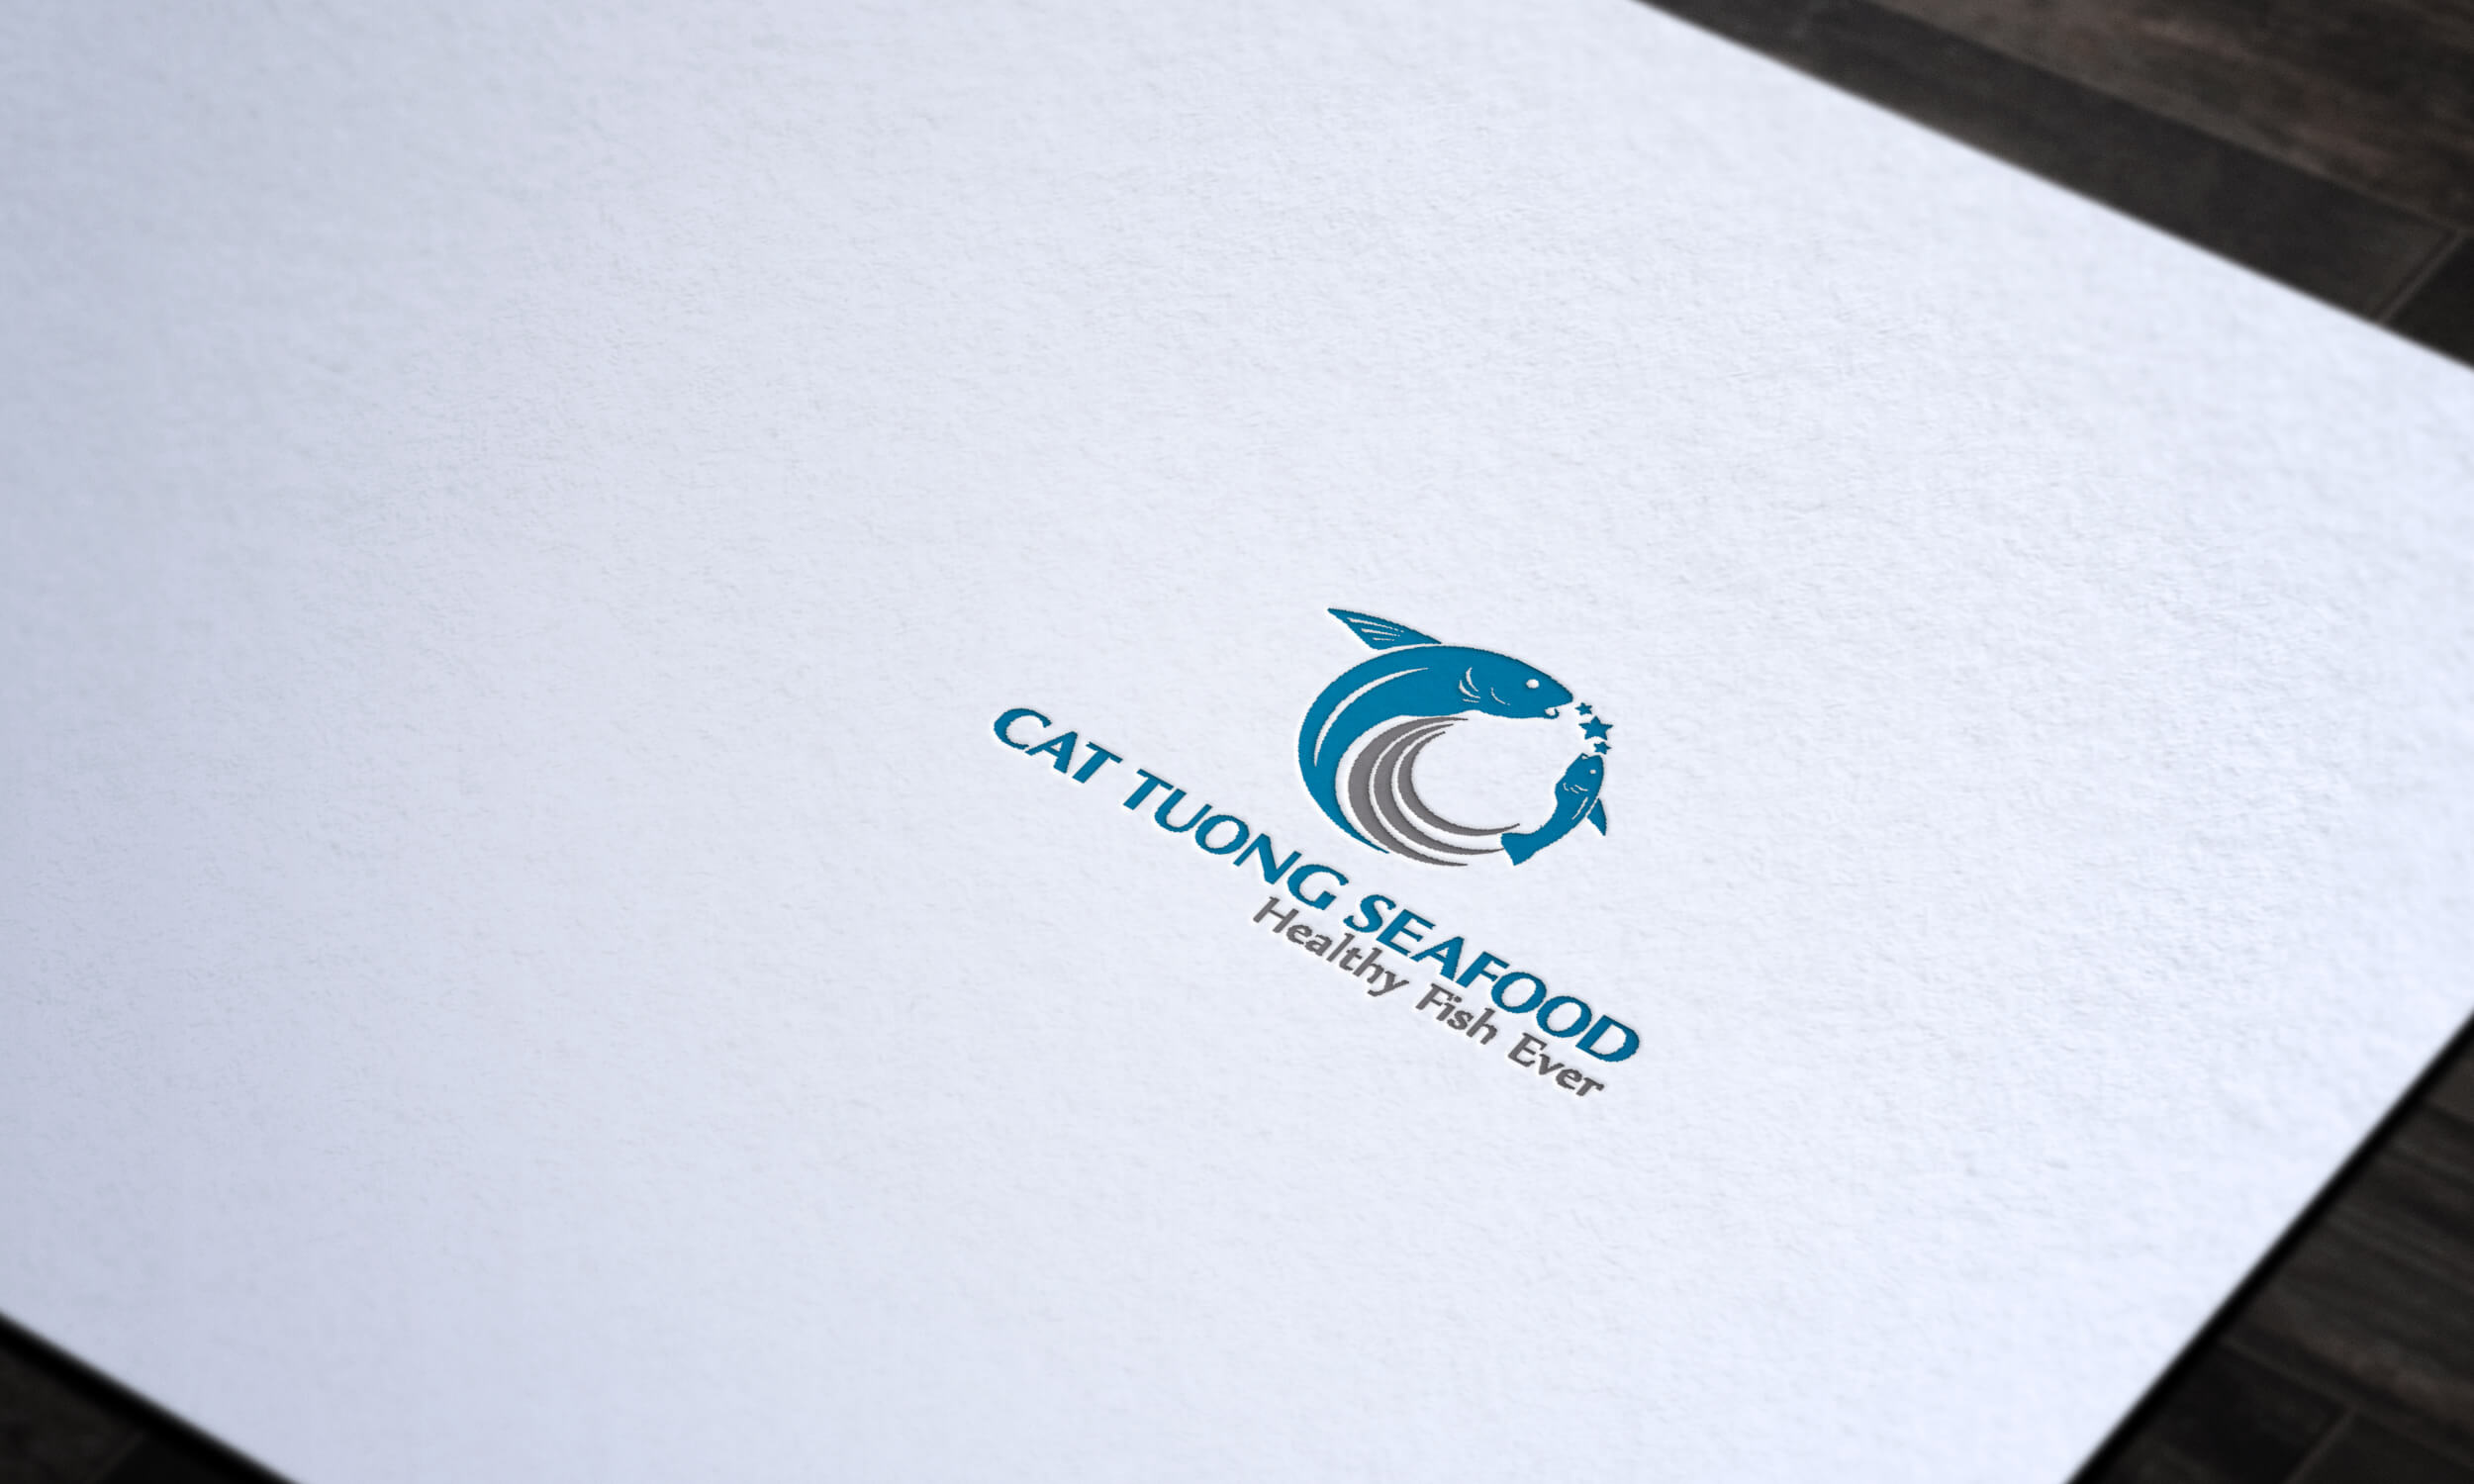 Thiết kế logo doanh nghiệp Cát Tường tại TP HCM